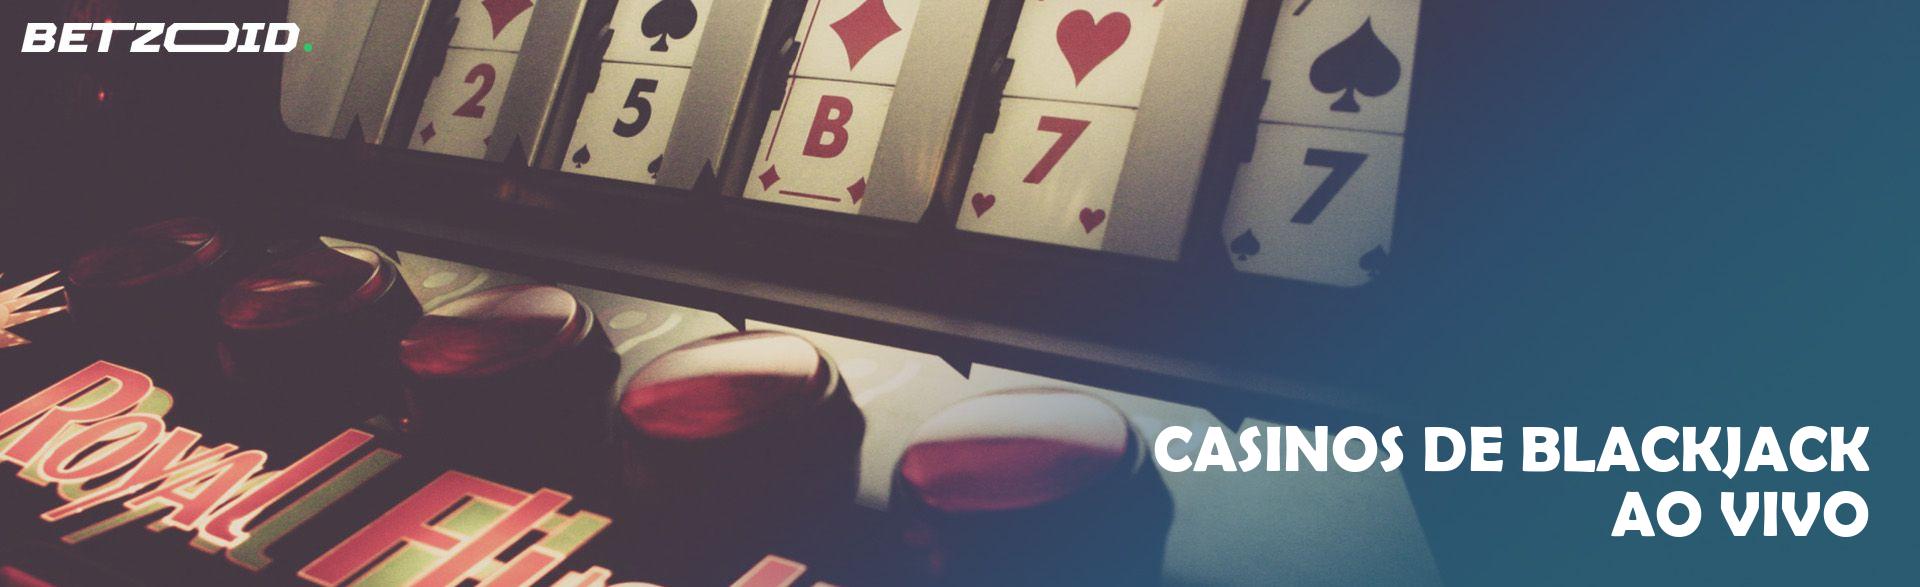 Casinos de Blackjack Ao Vivo.